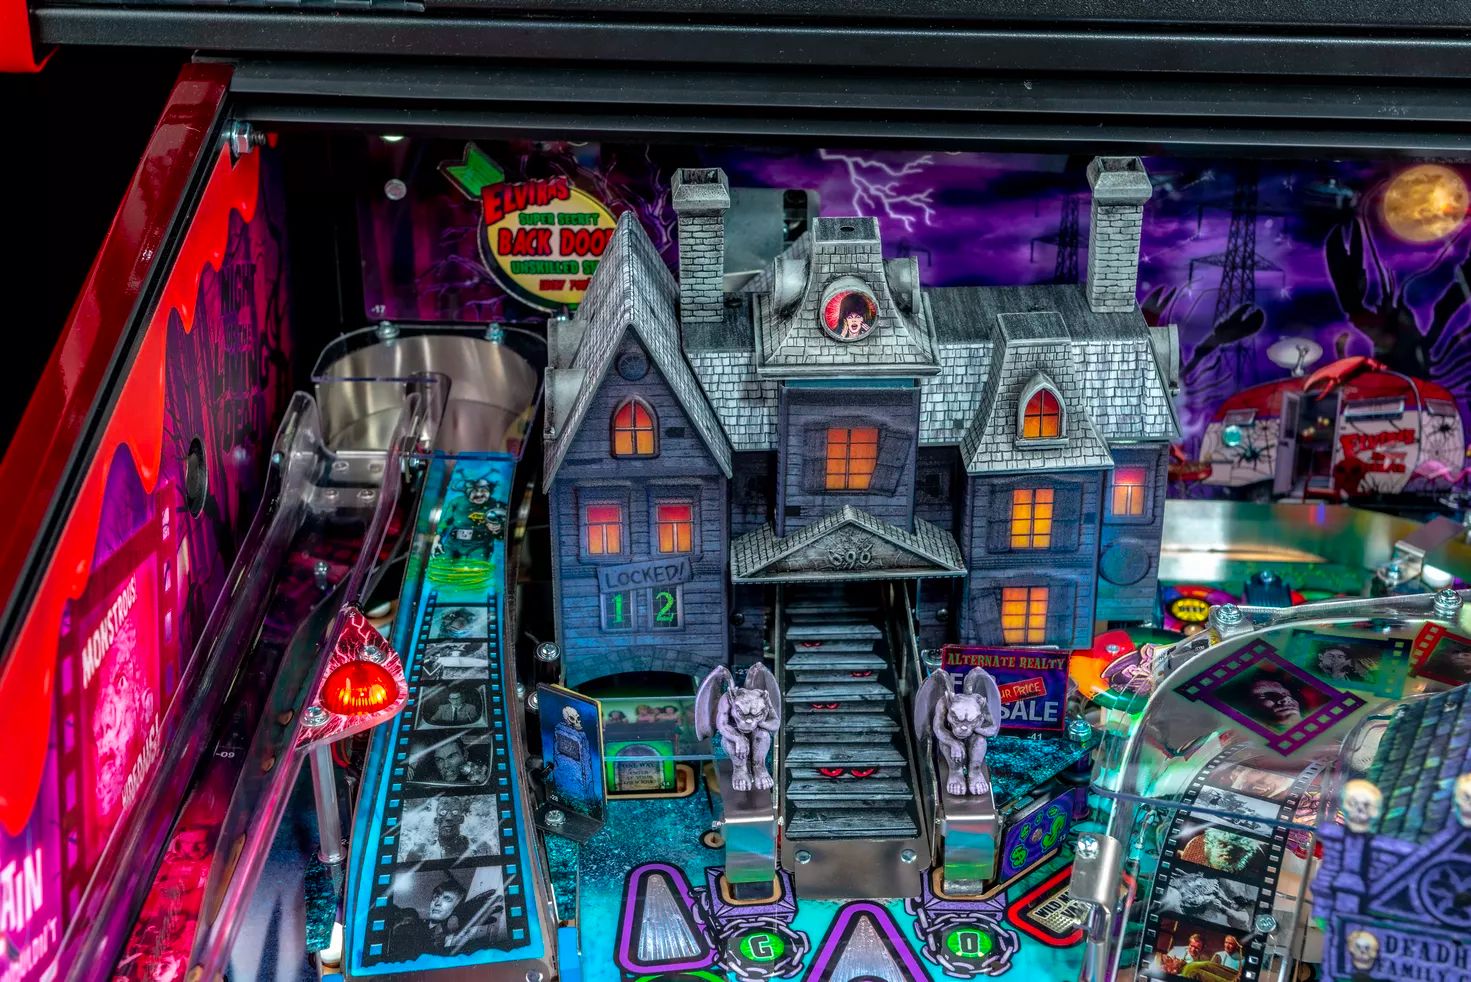 Elvira's House of Horrors Pinball machine by Stern #10